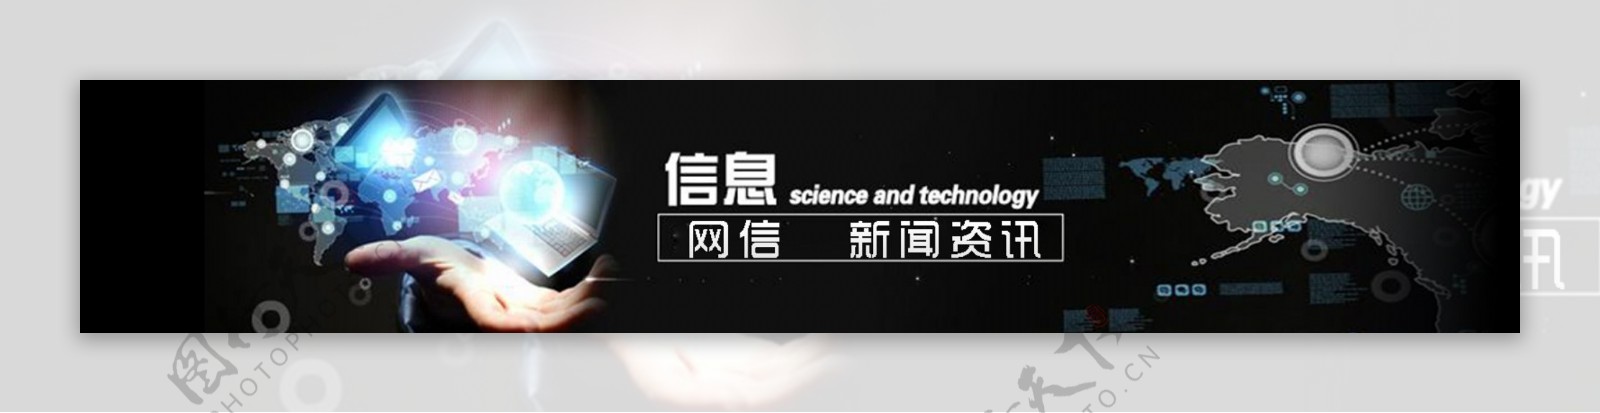 网络科技企业banner系列4新闻模块